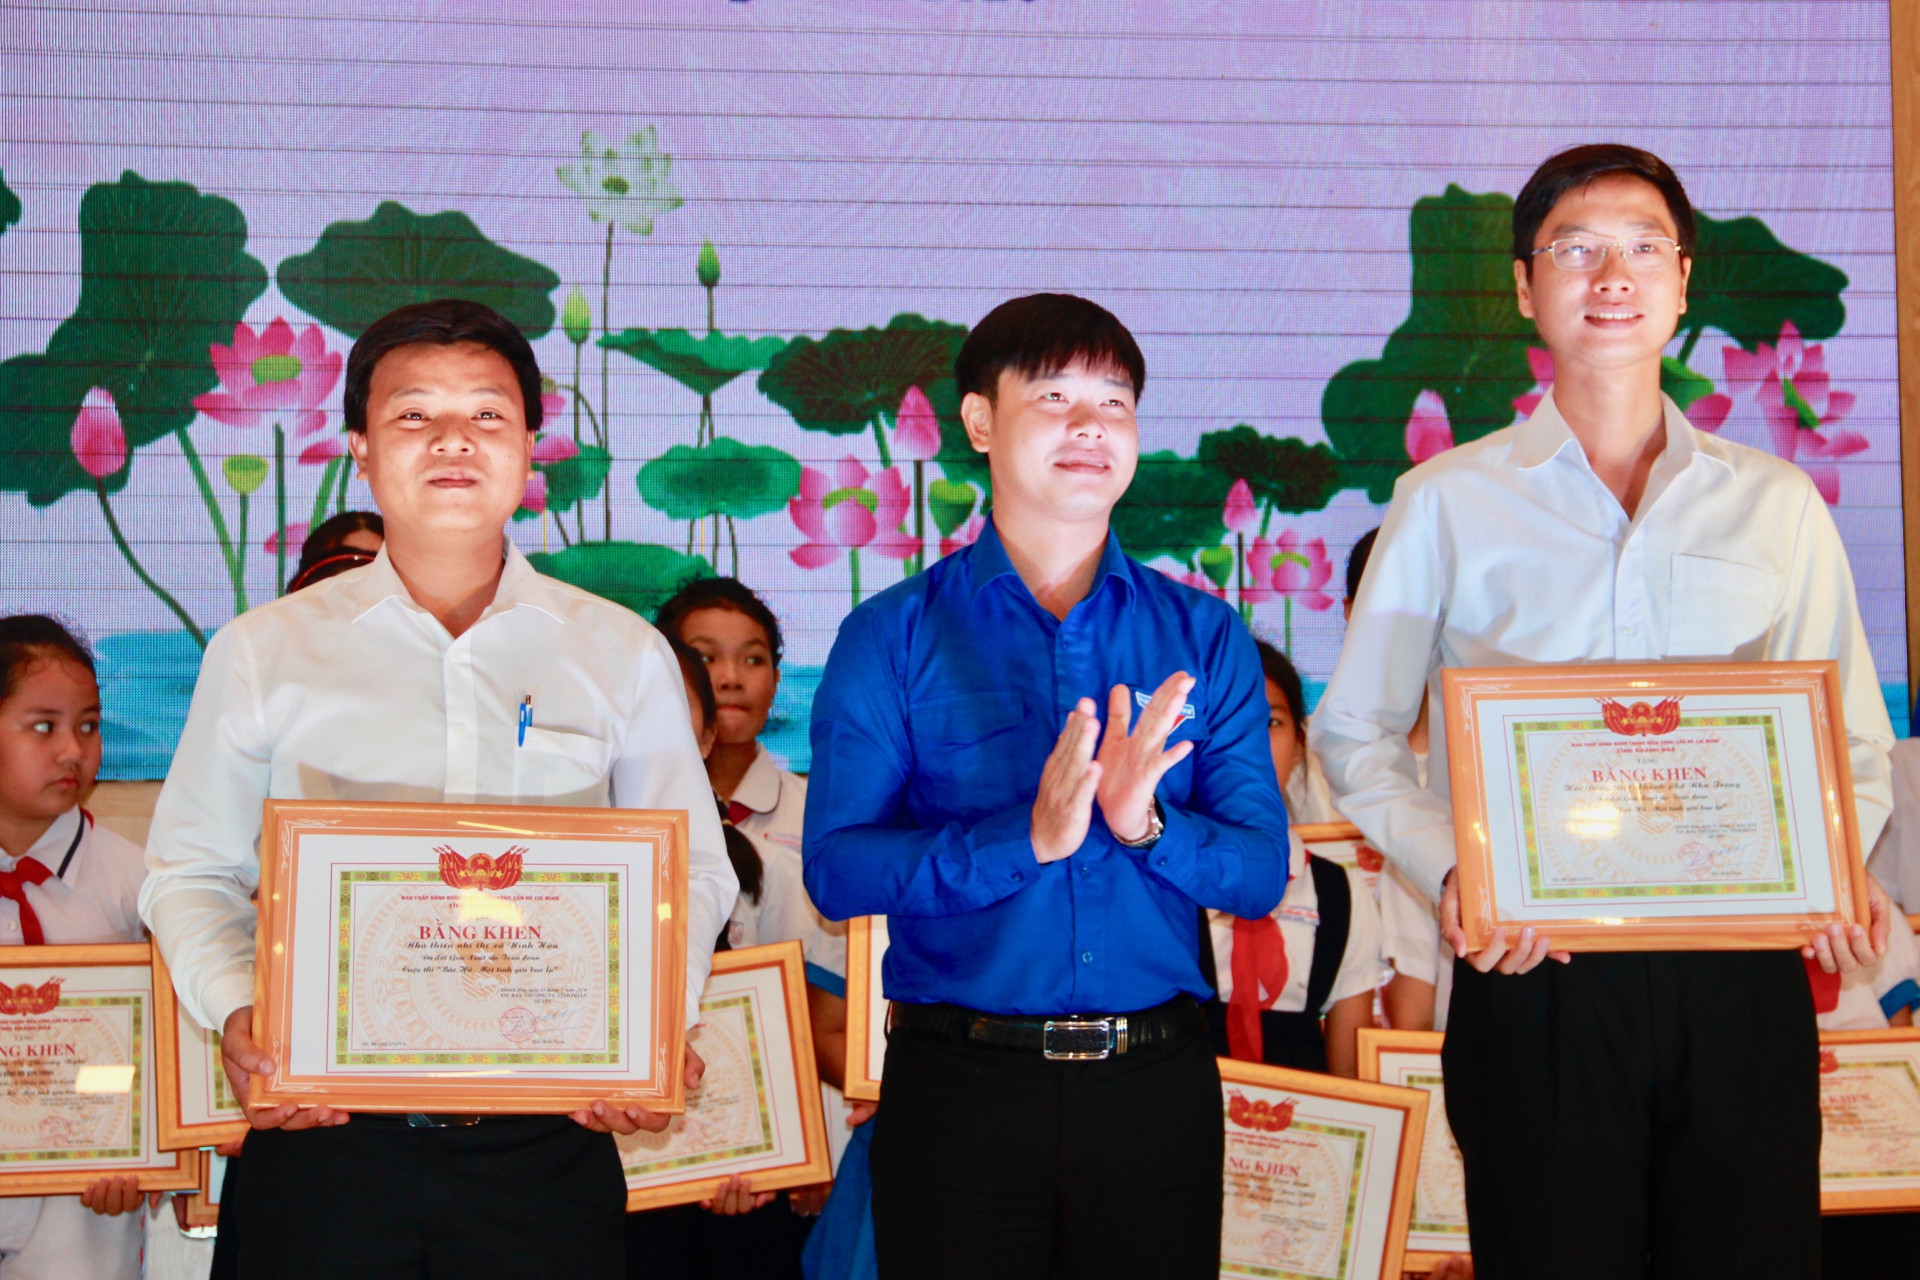 Tỉnh đoàn trao giải cho 2 đơn vị xuất sắc toàn đoàn Cuộc thi Bác Hồ Một tình yêu Bao la